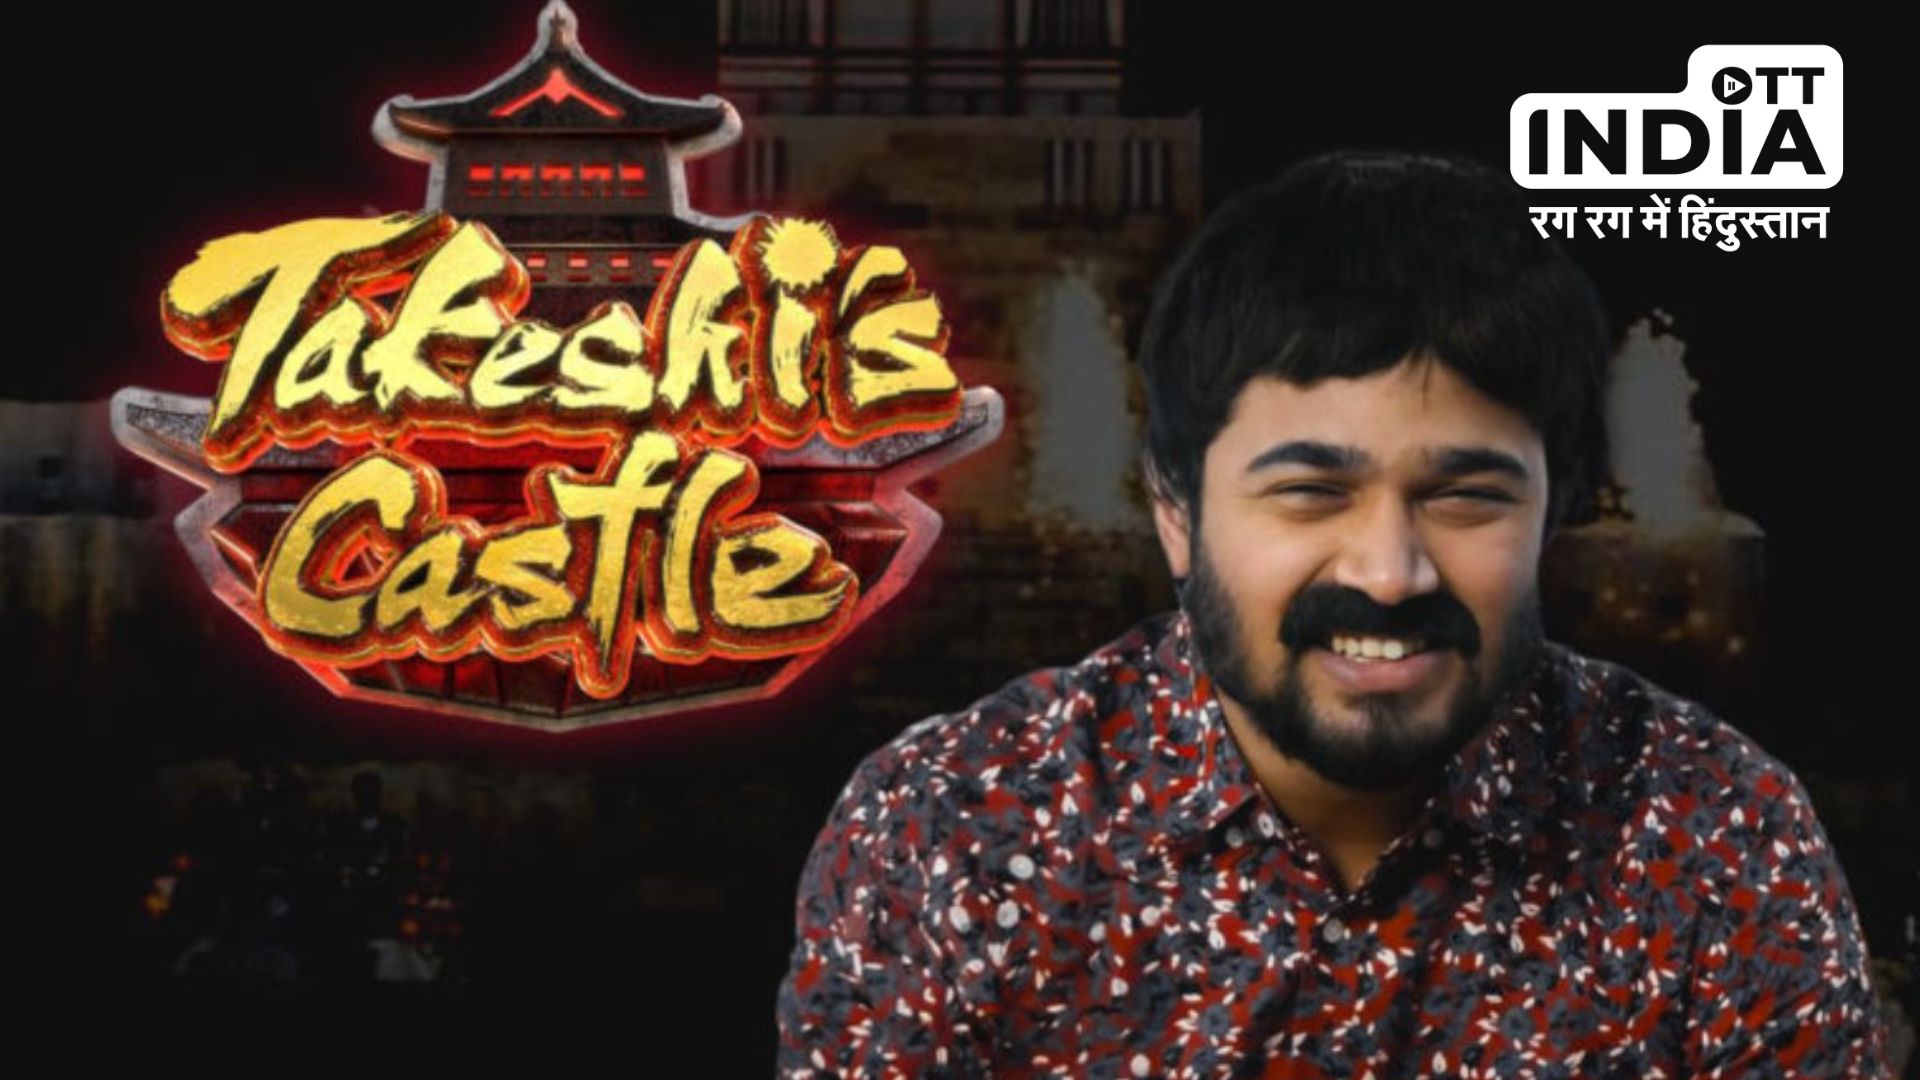 New Takeshi’s Castle : जल्द वापस लौट रहा है ताकेशी कैसल, जावेद जाफरी की जगह टीटू मामा अपनी आवाज से हंसाने के लिए हैं तैयार…